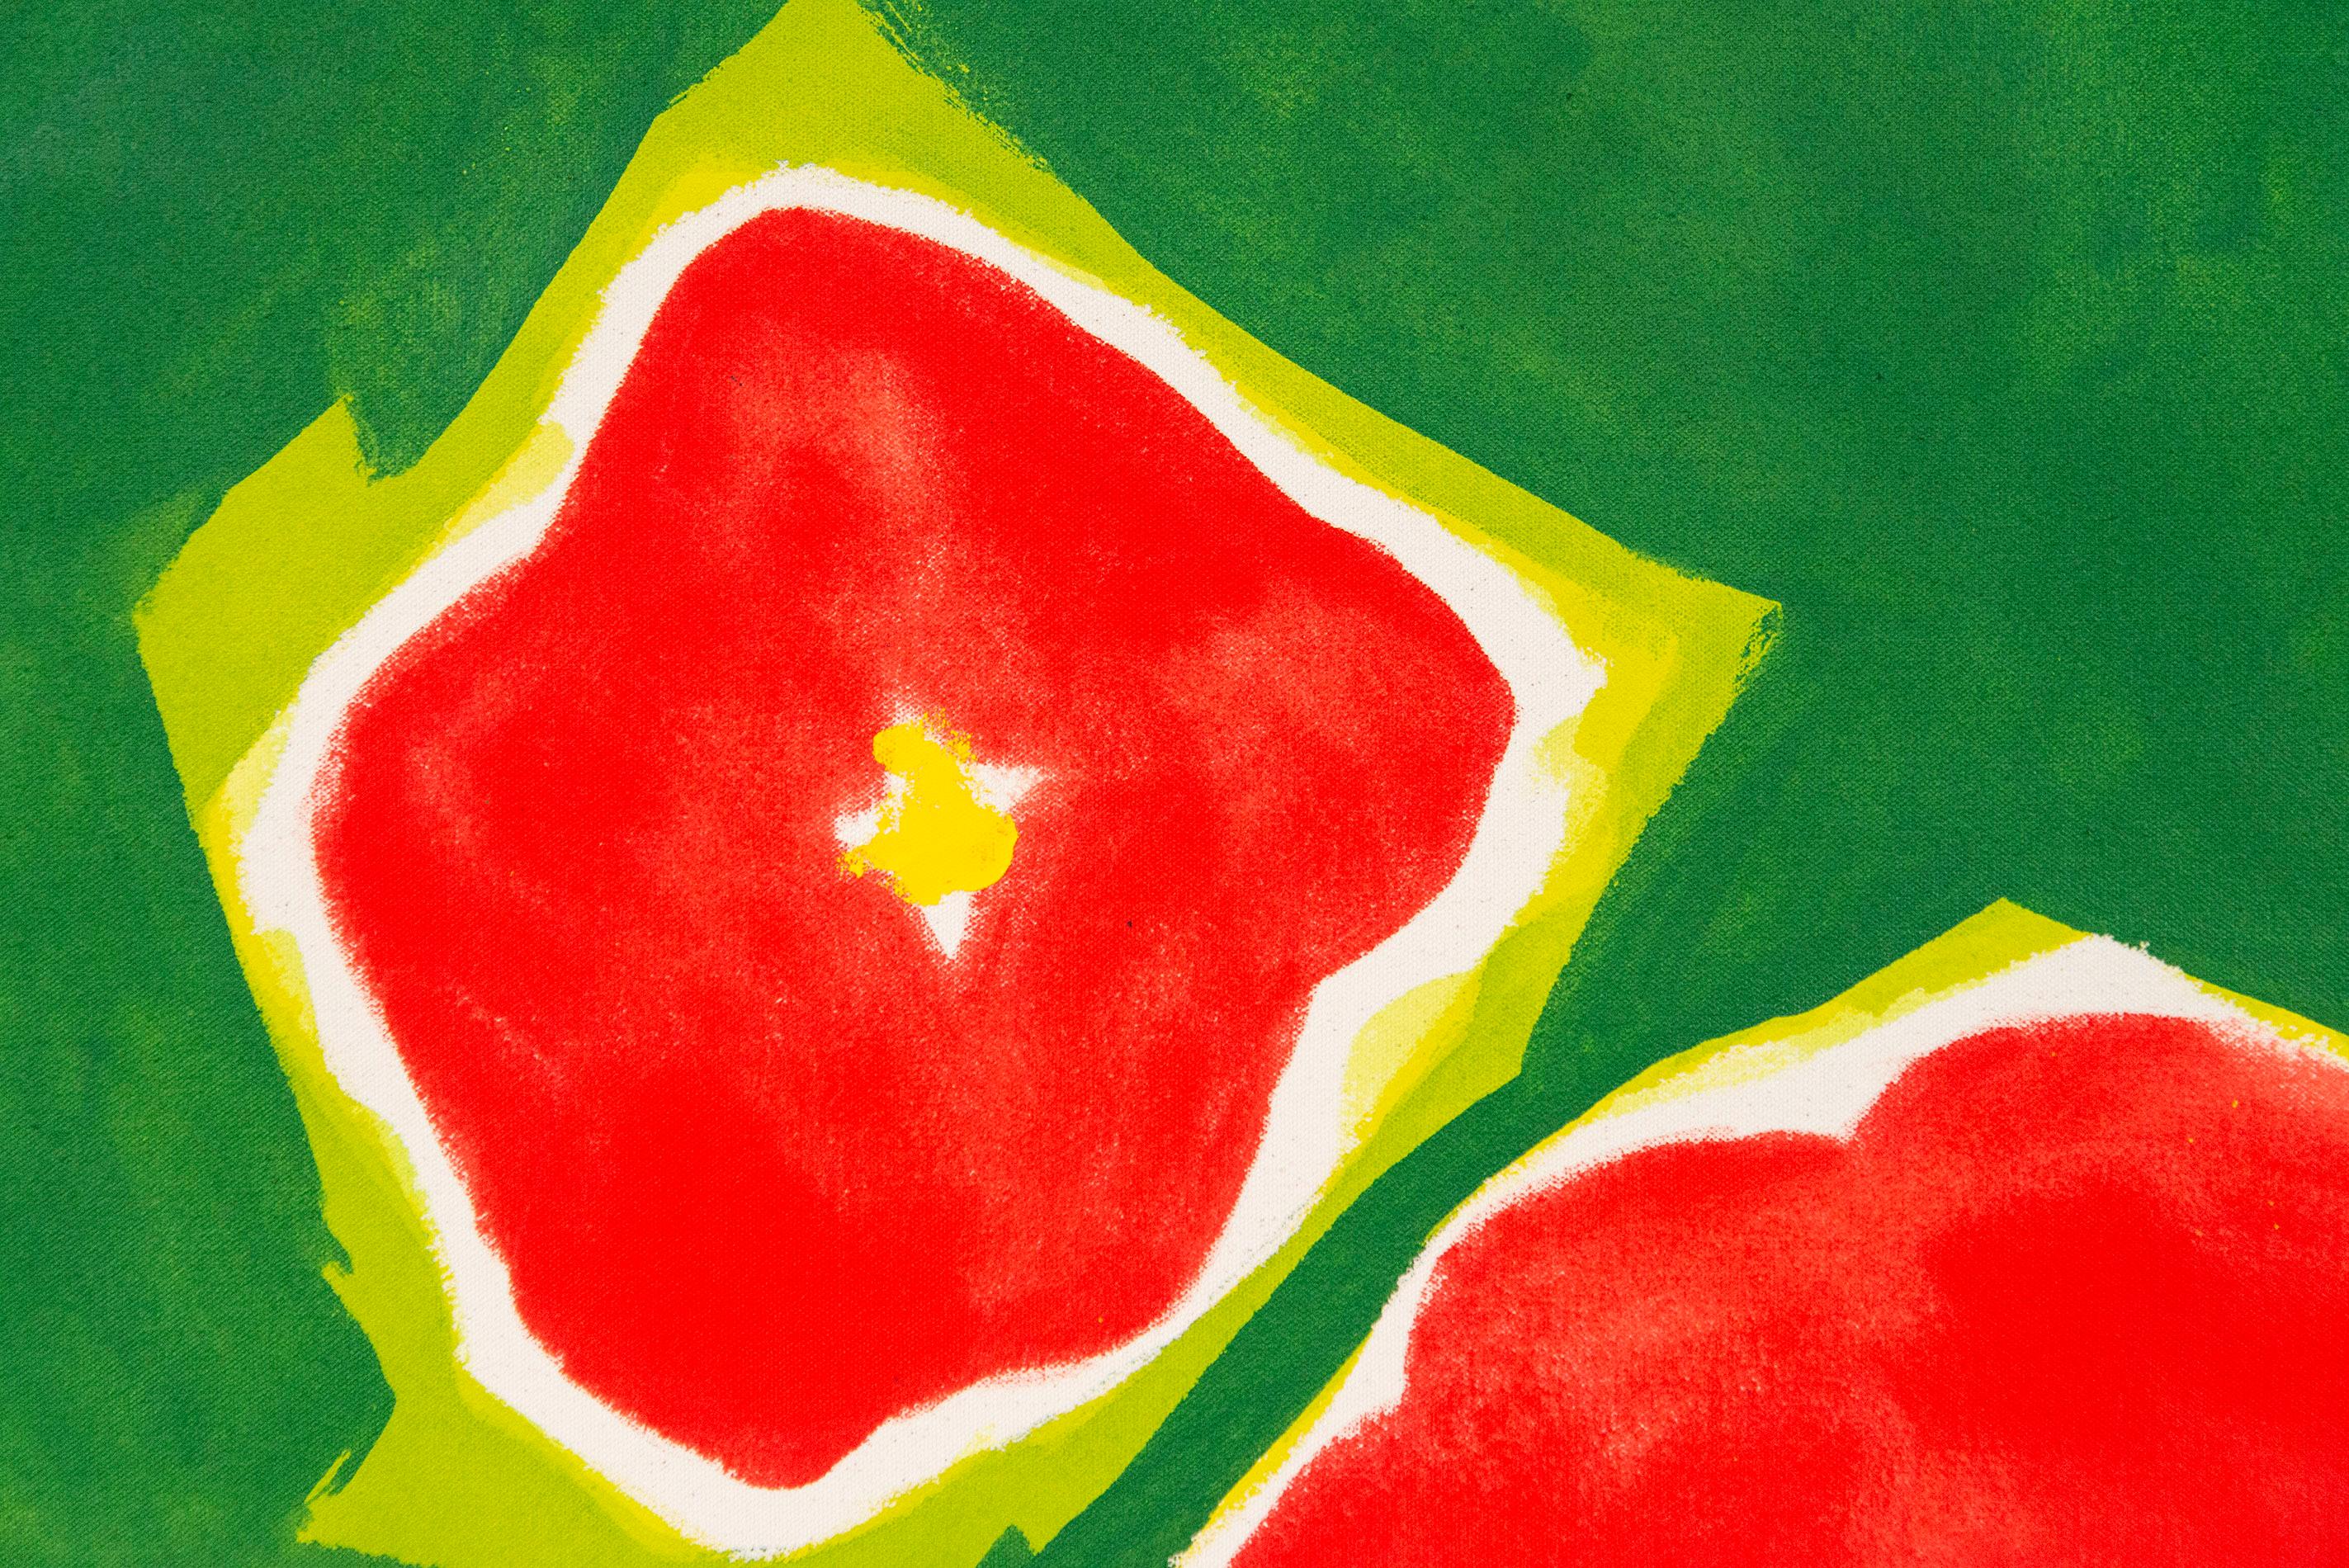 Cinq Fleurs Rouge sur Vert - Couleur minimale, abstrait, floral, huile sur toile - Contemporain Painting par Pat Service